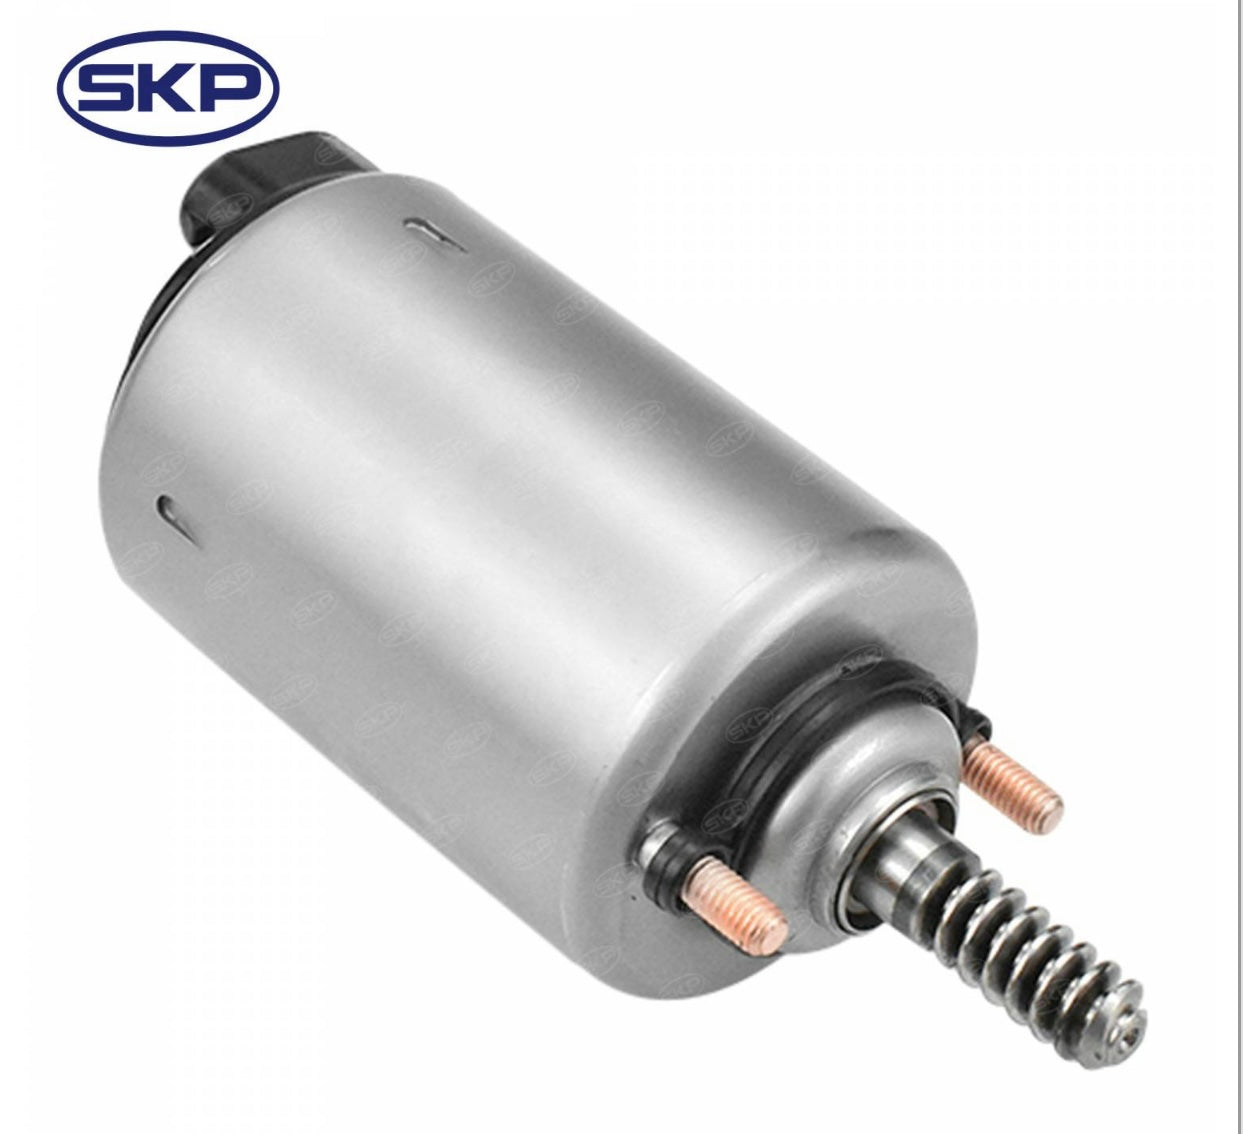 SKP Eccentric Shaft Actuator For BMW ENGINE VVT VARIABLE VALVETRONIC MOTOR ACTUATOR For BMW X1 X3 Z4 E87 E88 E46 E90 E91 E83 Z4 SK914300 11377548387 11377509295 11377501015